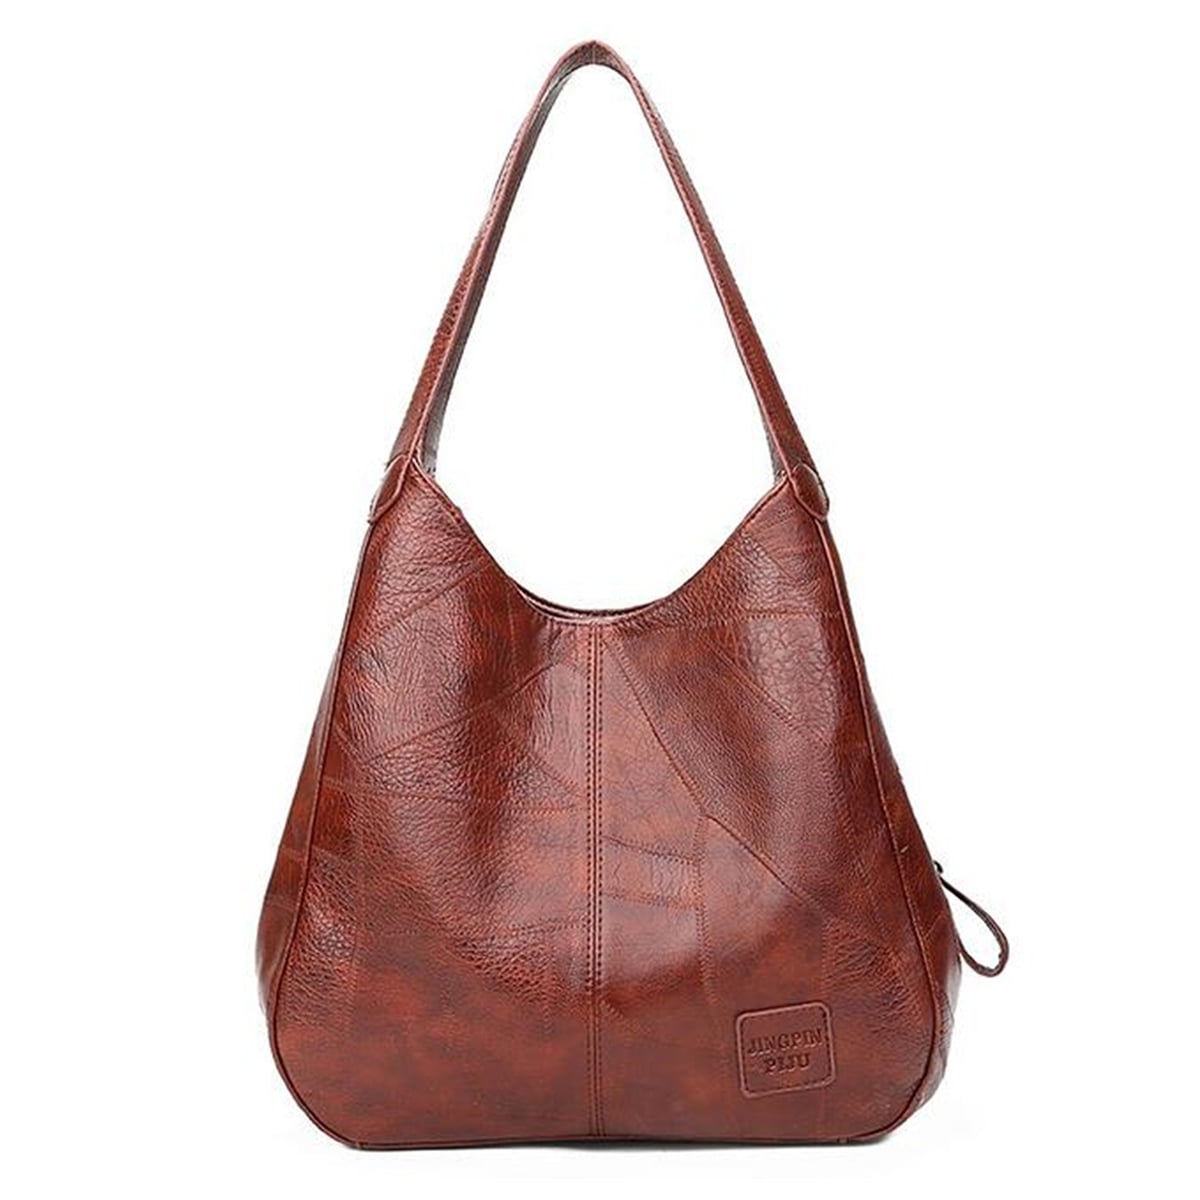 Vintage Women Tote Leather Shoulder Bag Handbag Messenger Crossbody Hobo Purse